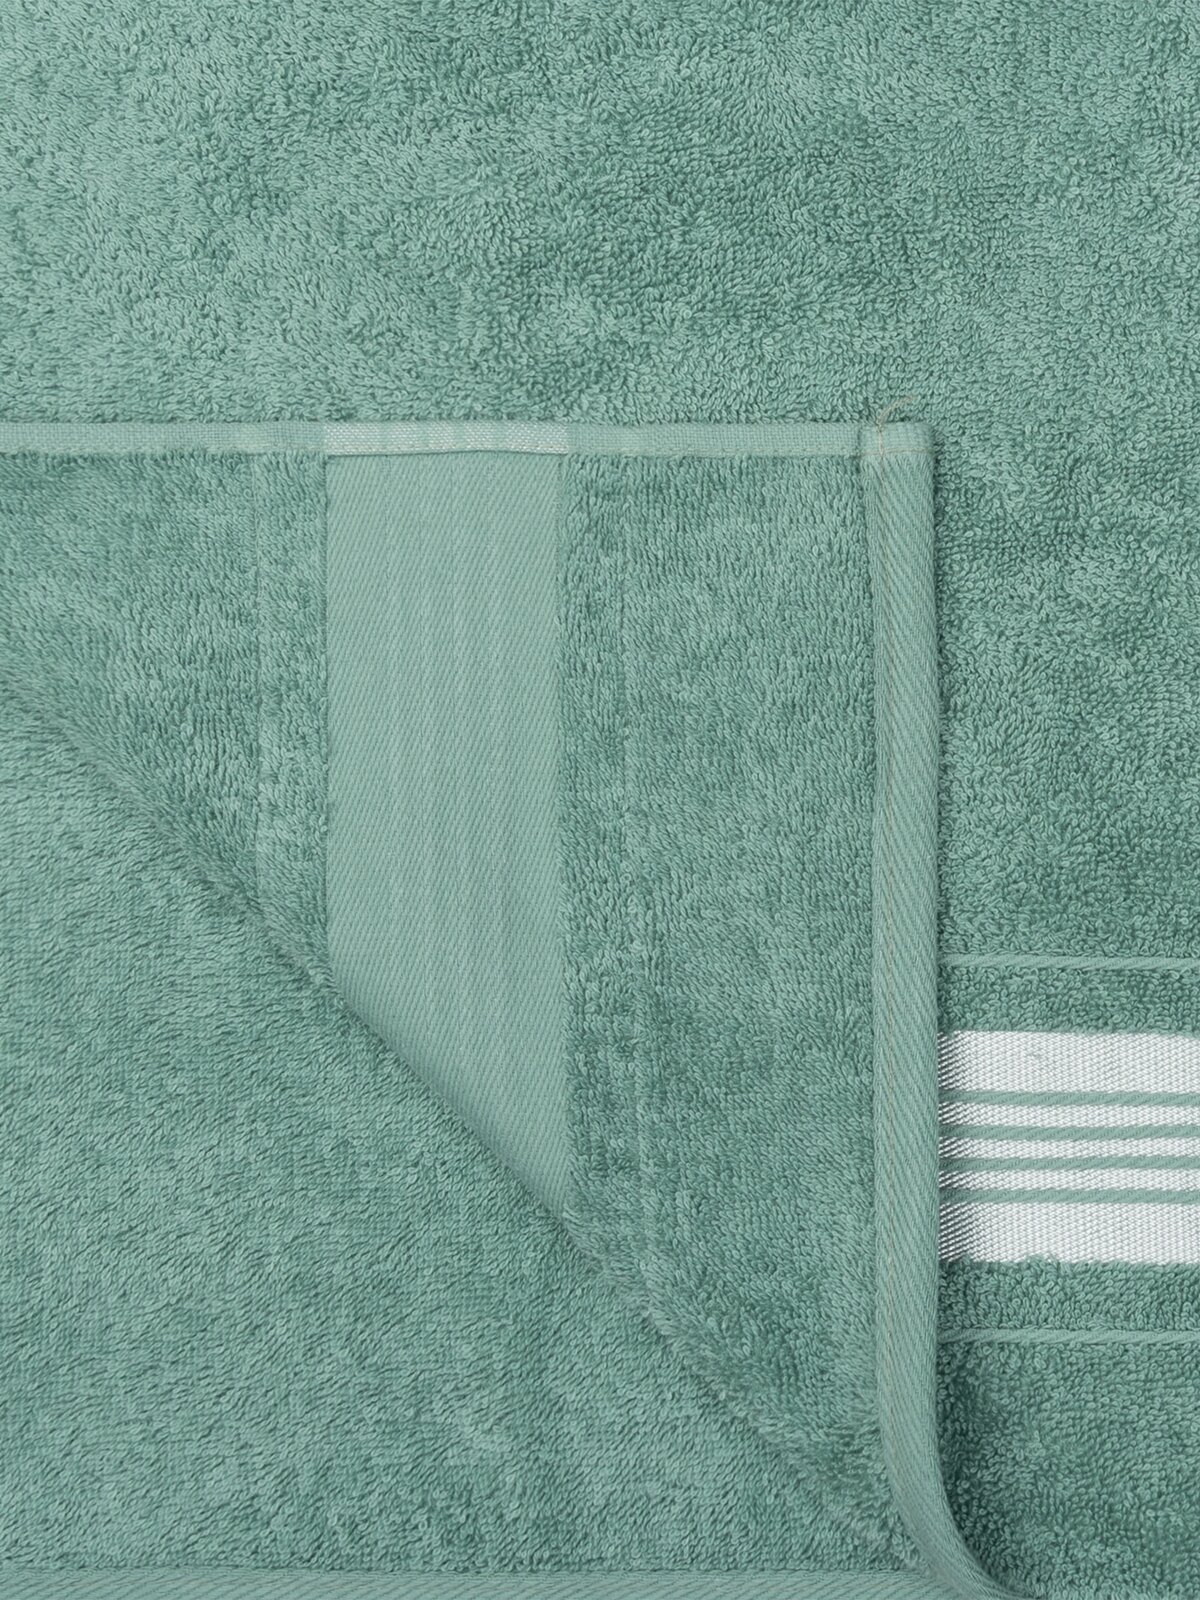 Полотенце махровое для лица и рук, Донецкая мануфактура,Ice shine, 50Х90 см, цвет: зеленый, 100% хлопок - фотография № 4